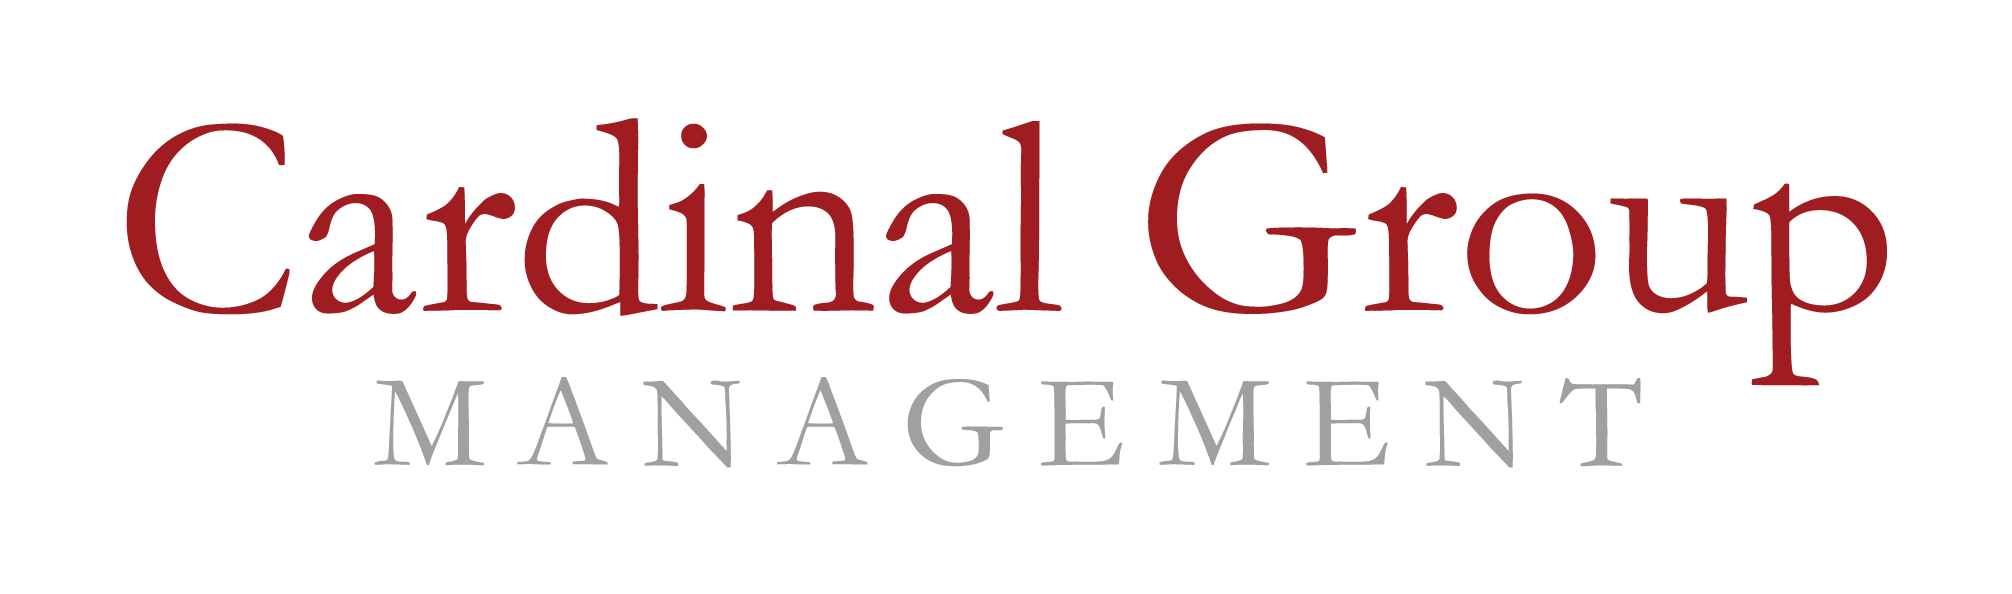 Cardinal Group Management logo